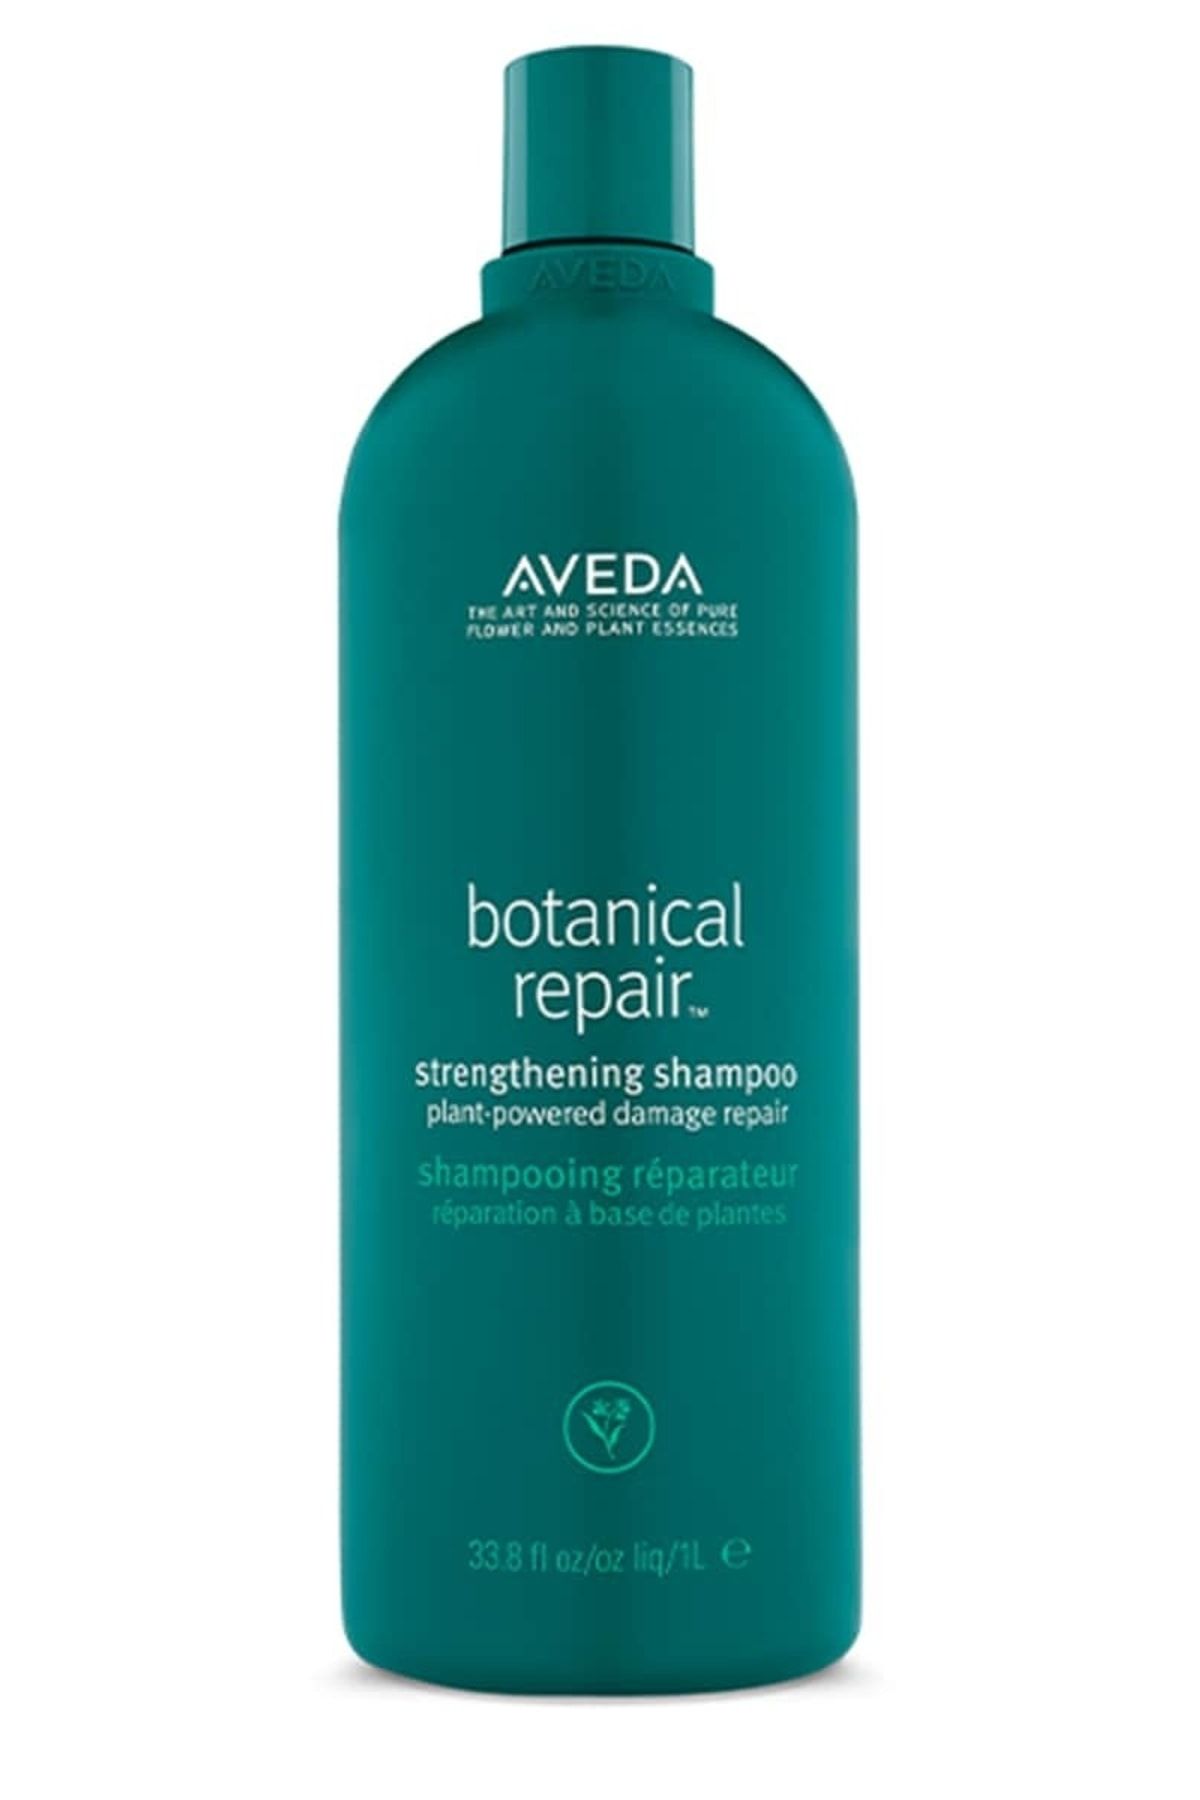 Aveda Botanical Repair Yıpranmış Saçlar Için Onarım Şampuanı 1000ml 18084019498